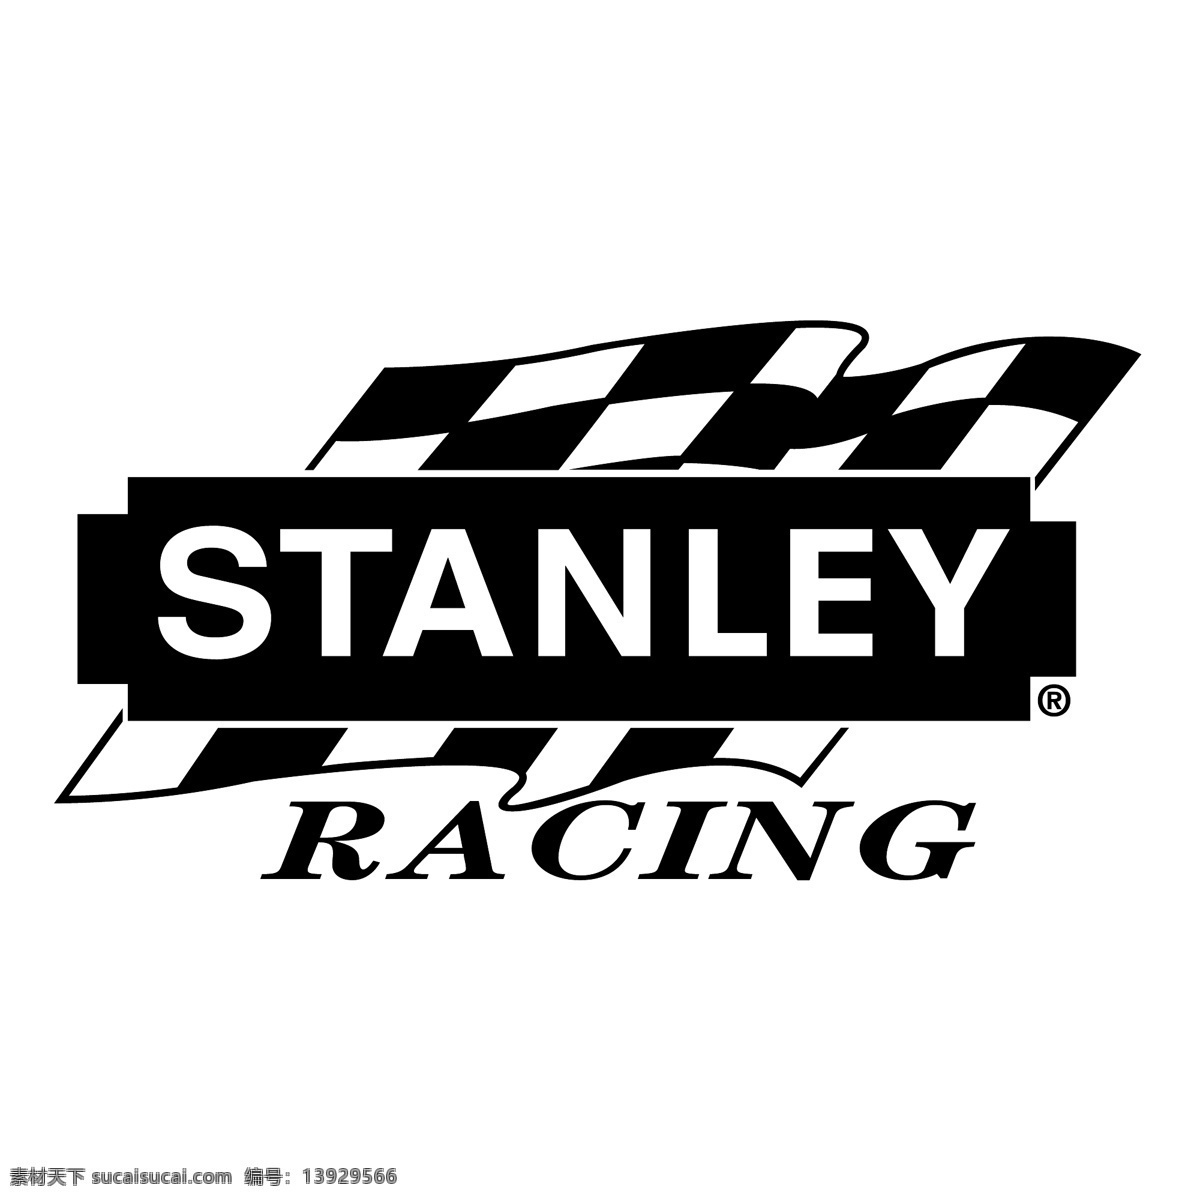 斯坦利 赛车 自由 标识 psd源文件 logo设计